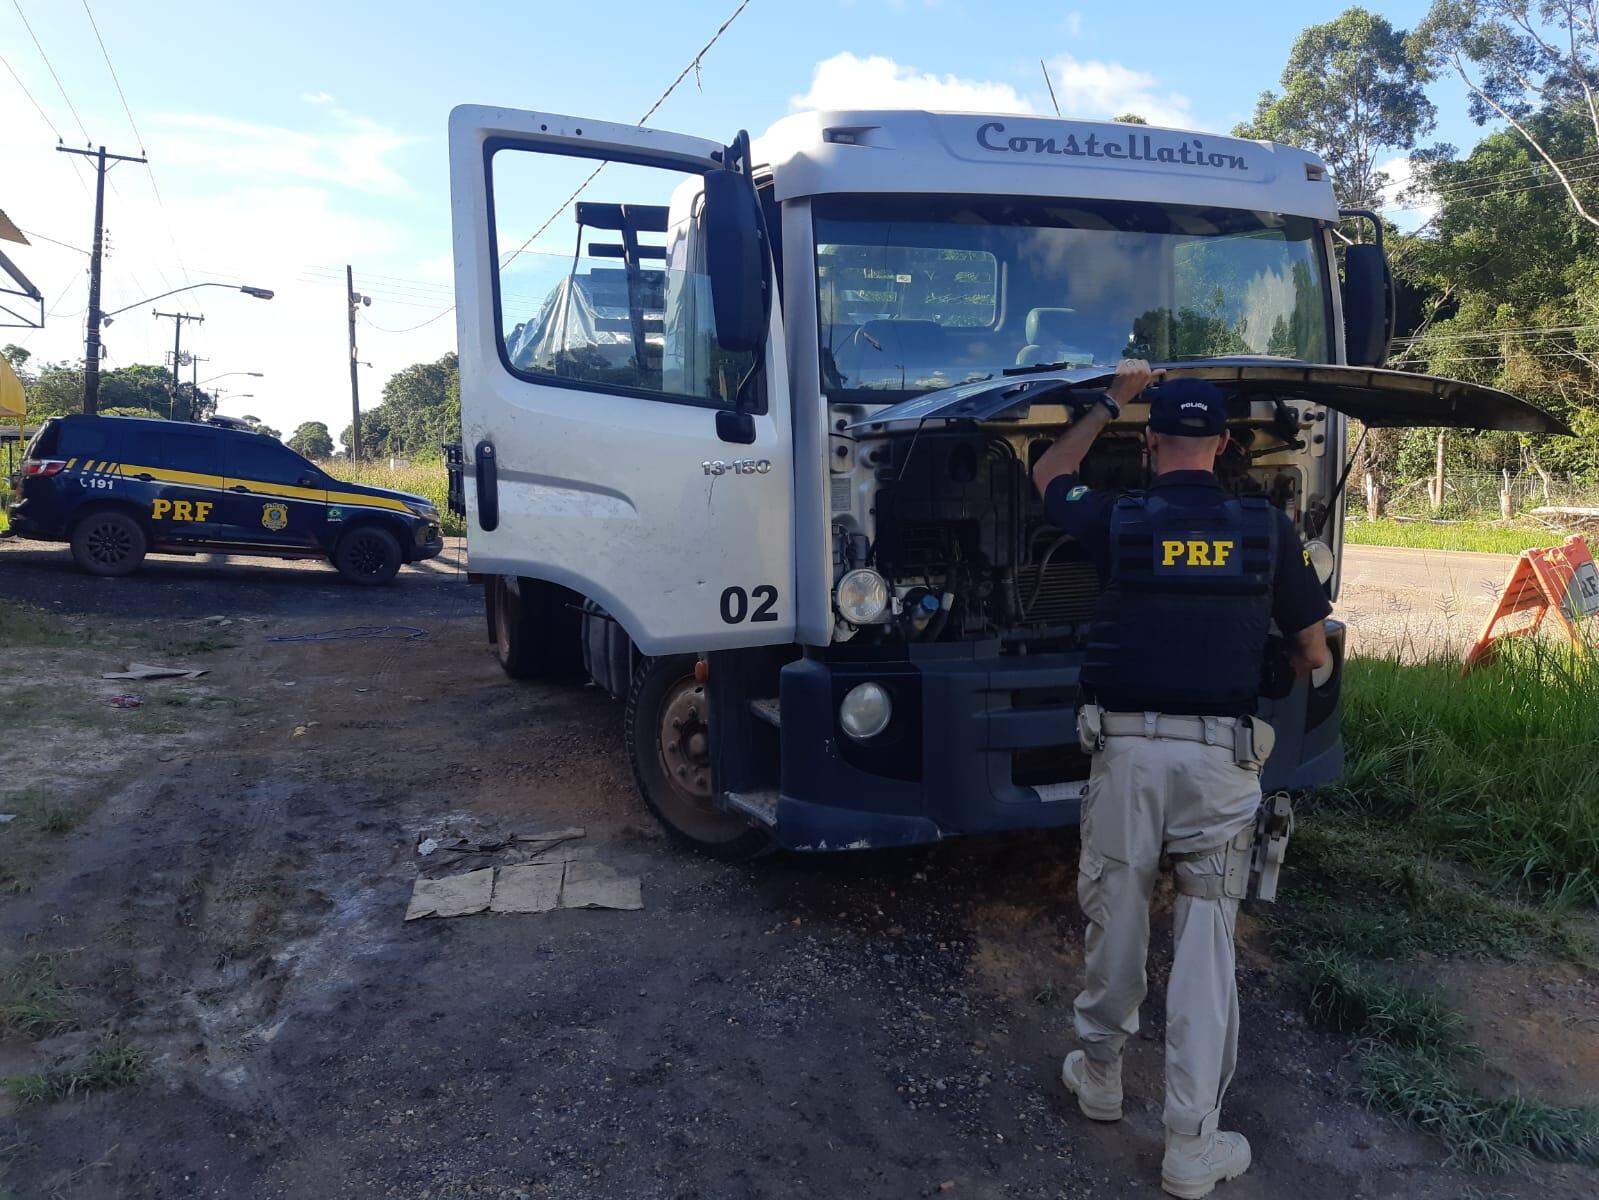 Santarém: PRF recupera caminhão com registro de roubo do Paraná